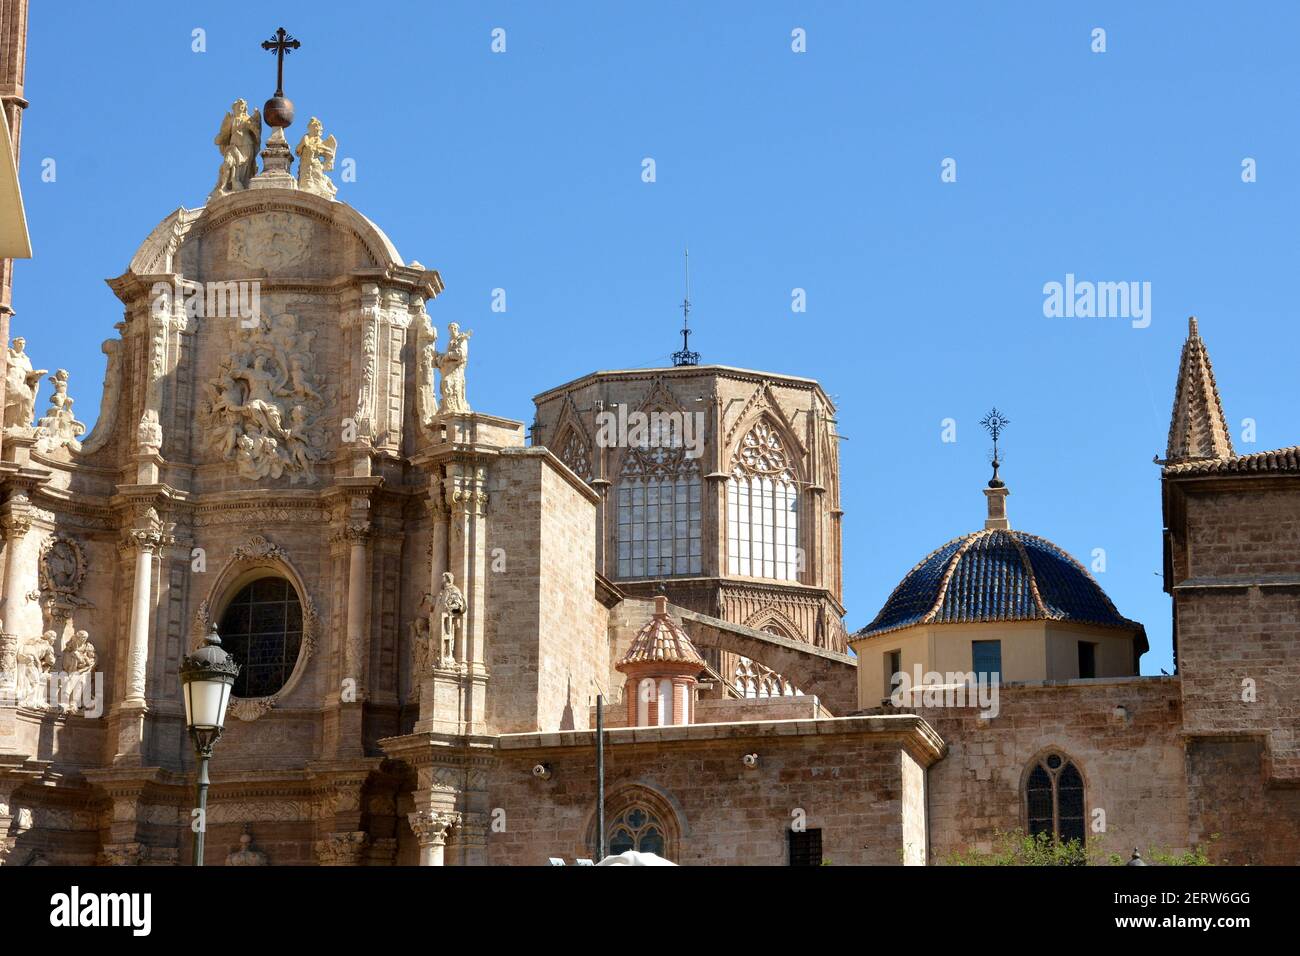 Espagne, Valence, la cathédrale Santa Maria en tant que prédominance du style gothique valencien, elle a été érigée sur le site d'une ancienne mosquée. Banque D'Images